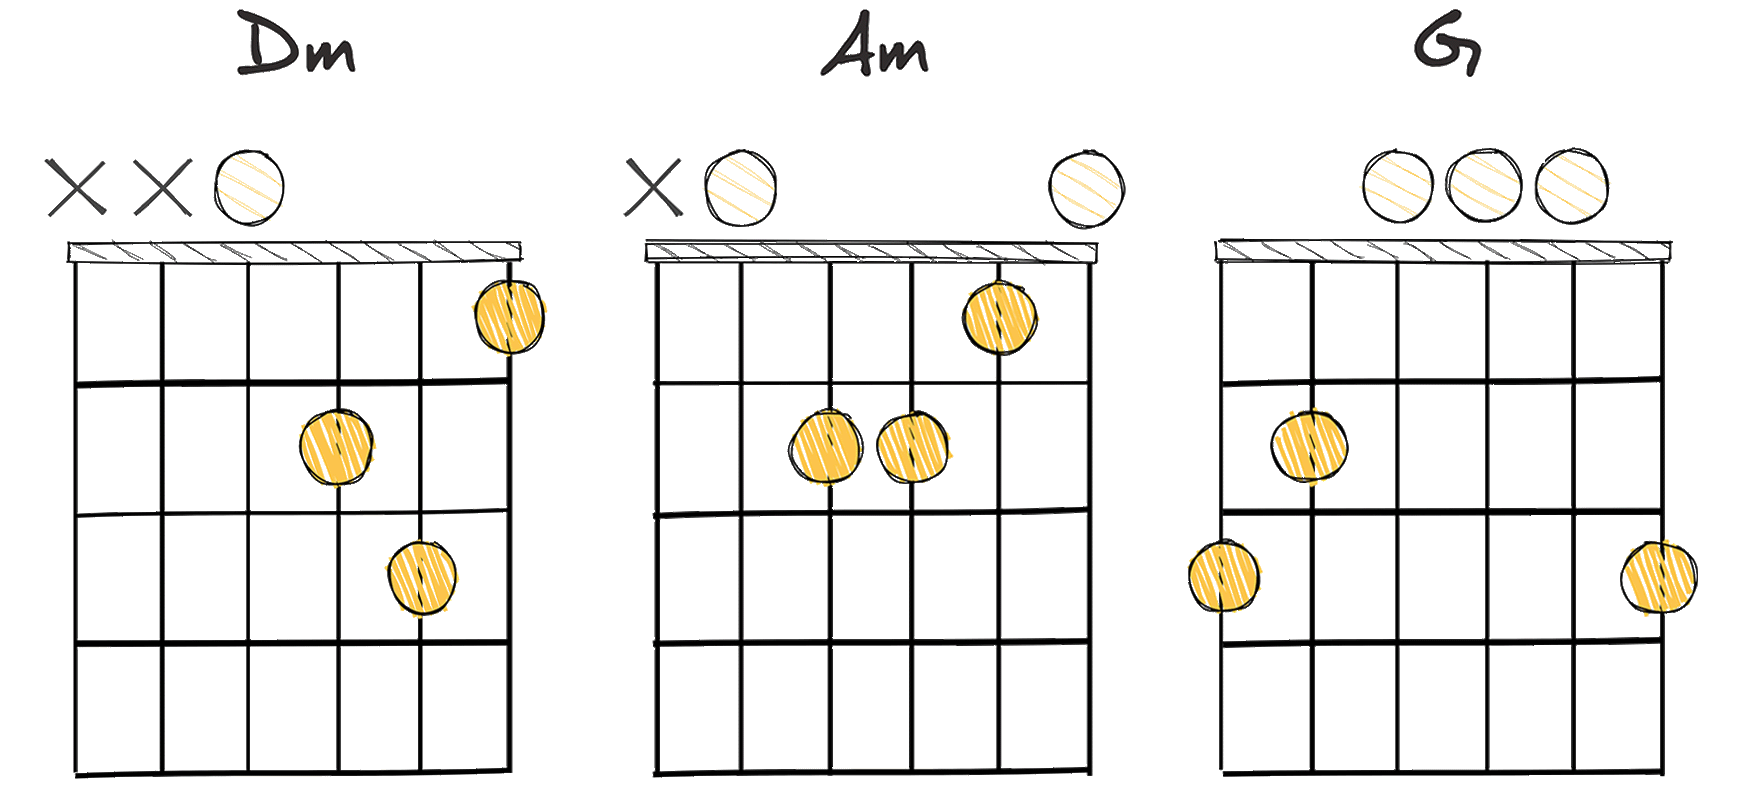 ii - vi - V (2-6-5) chords diagram